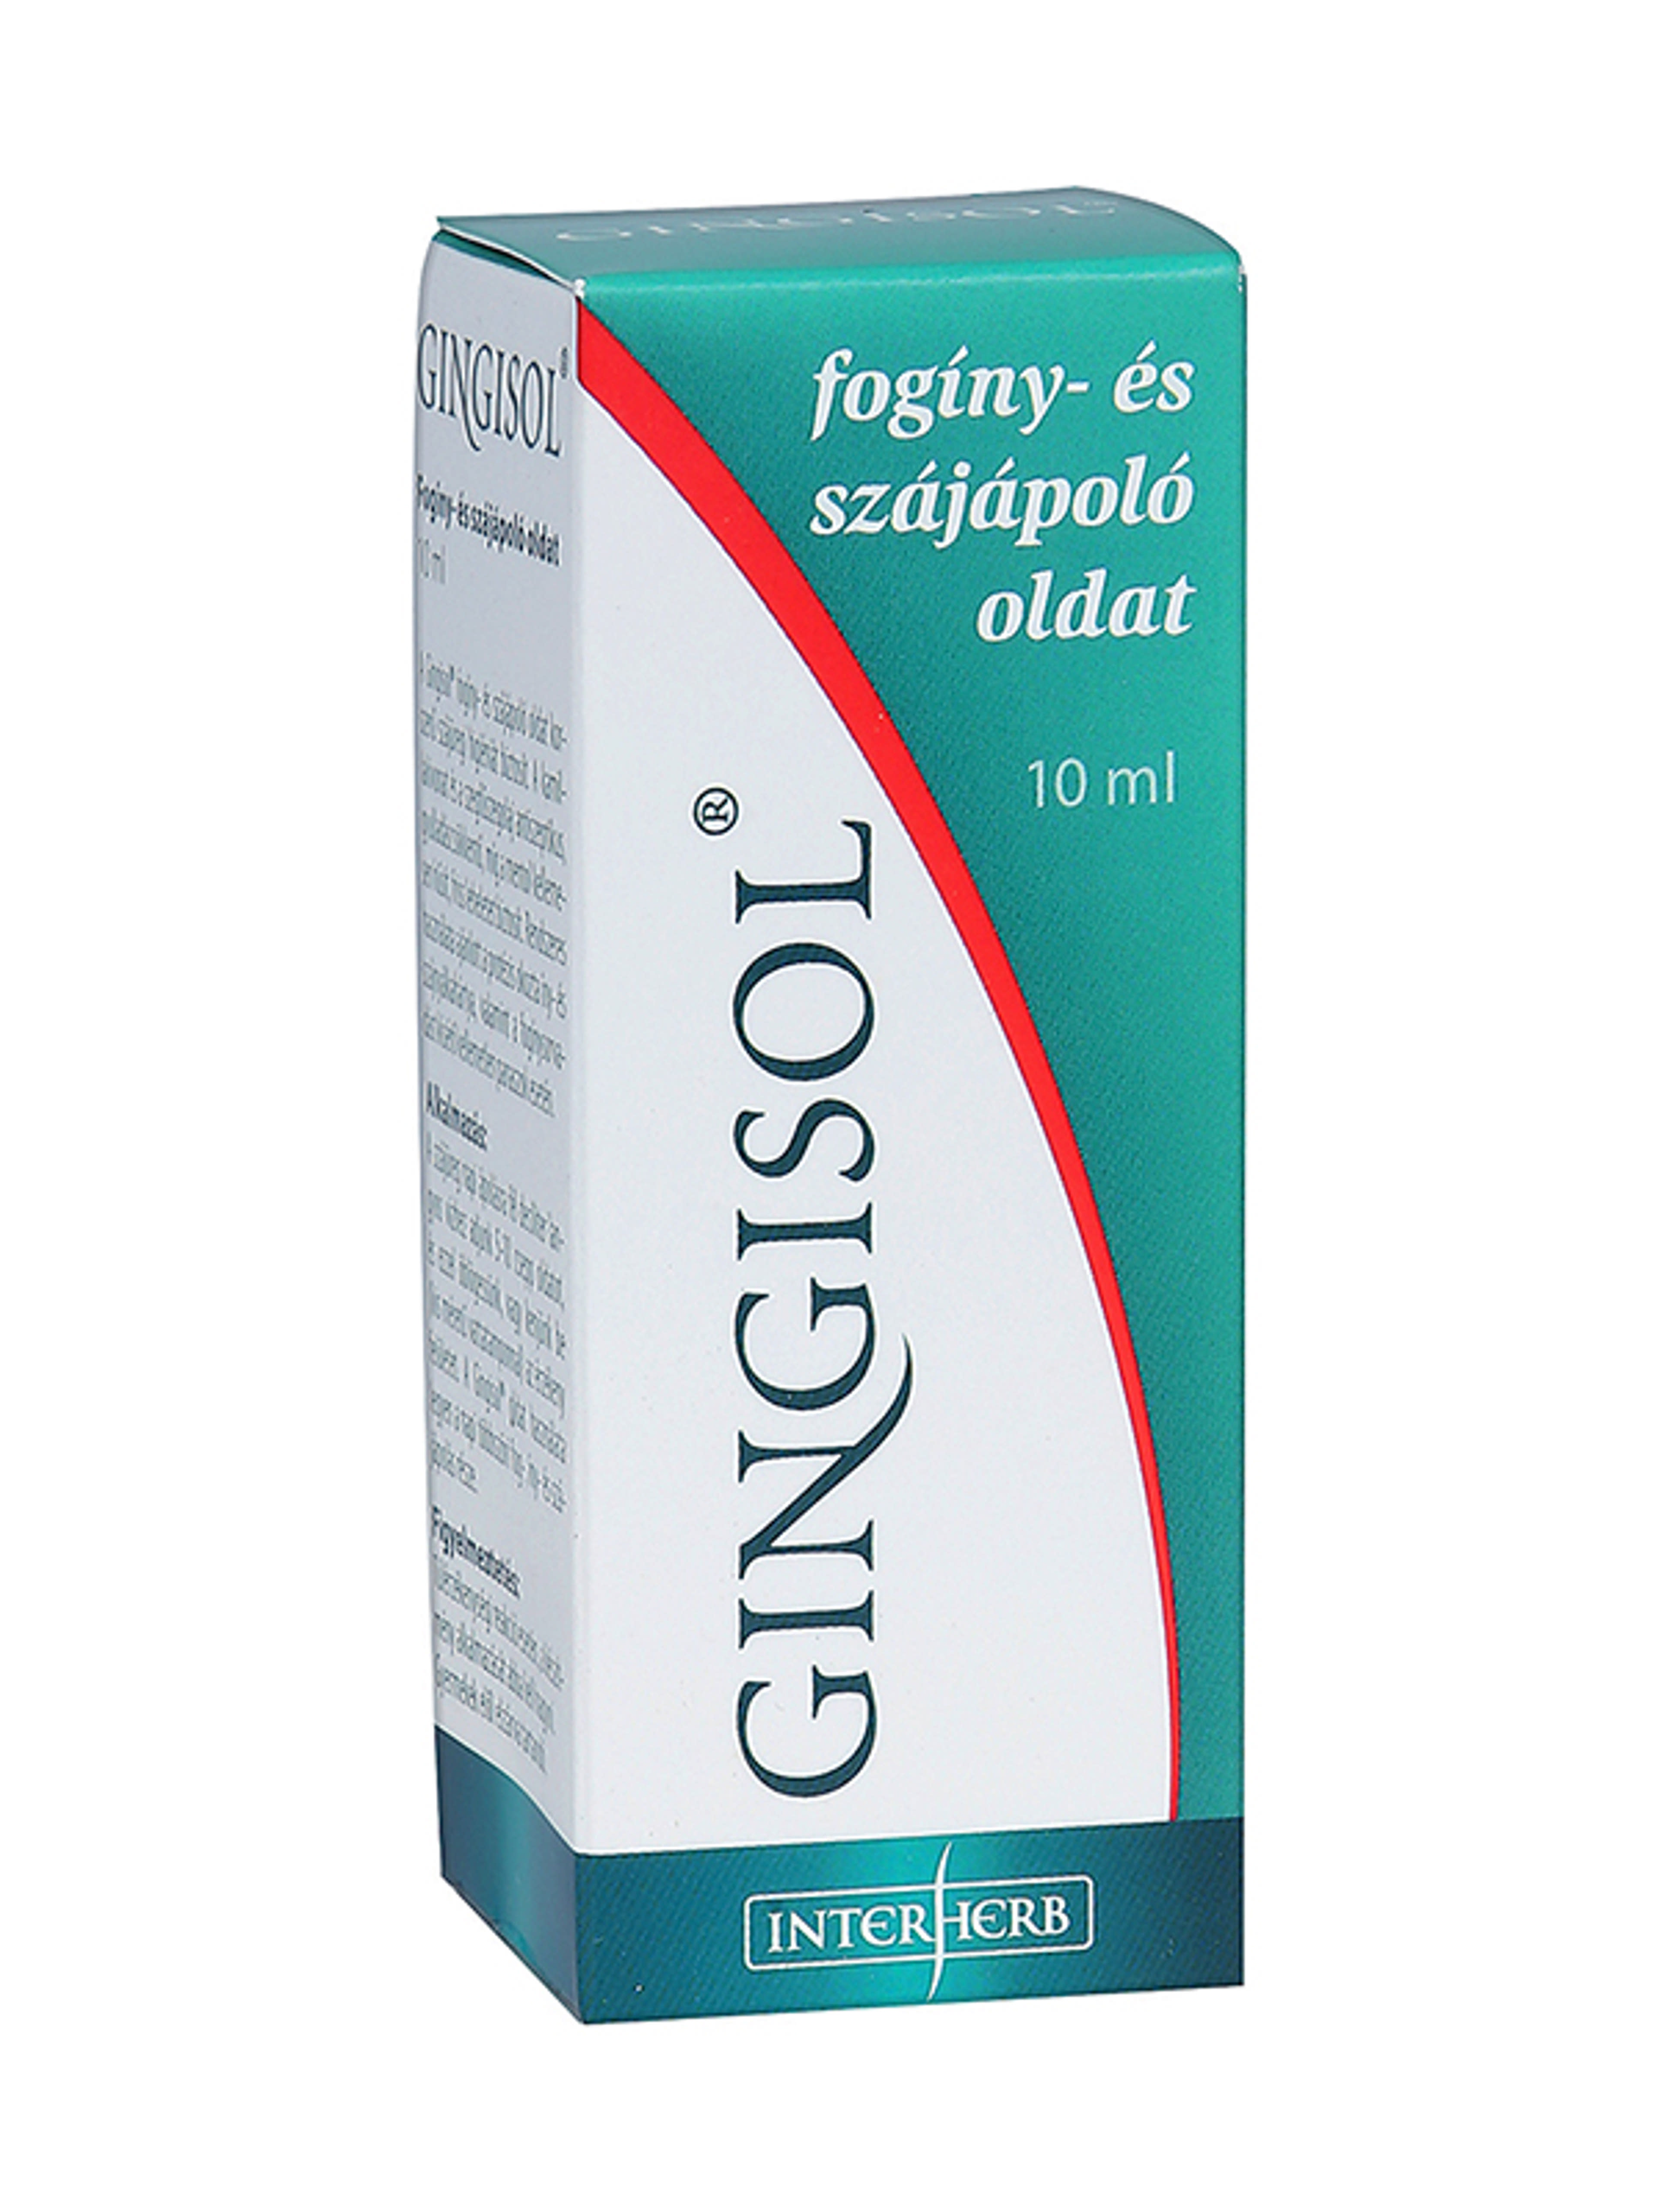 Interherb  Gingisol íny és szájápoló oldat - 10 ml